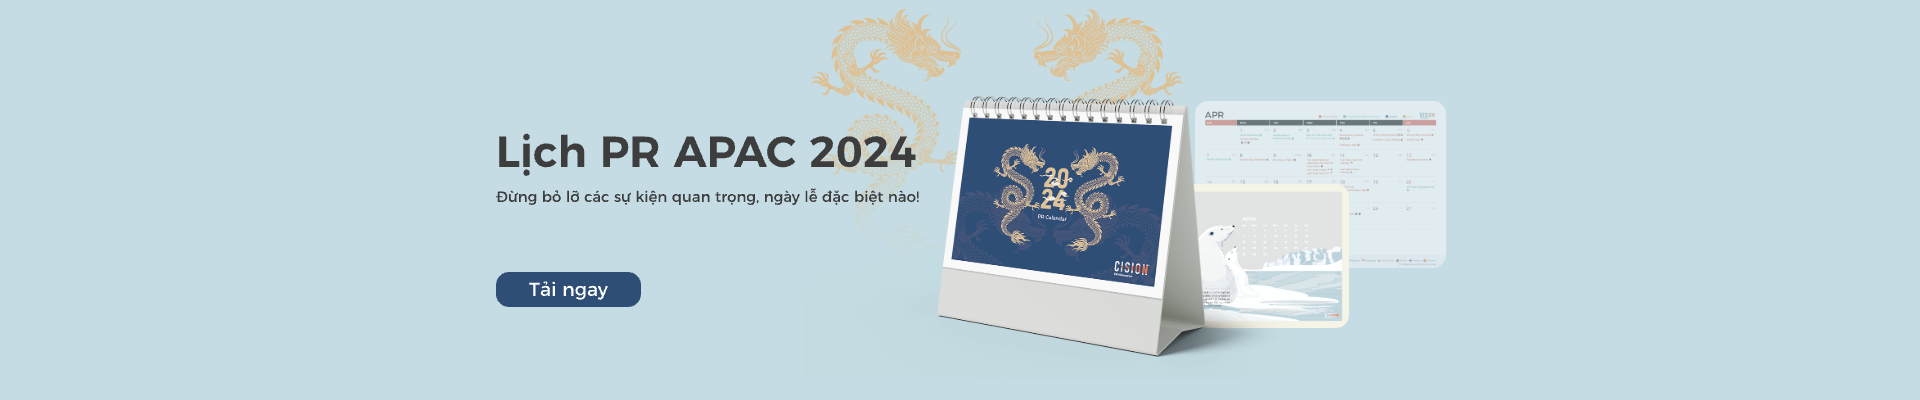 APAC PR Calendar 2024